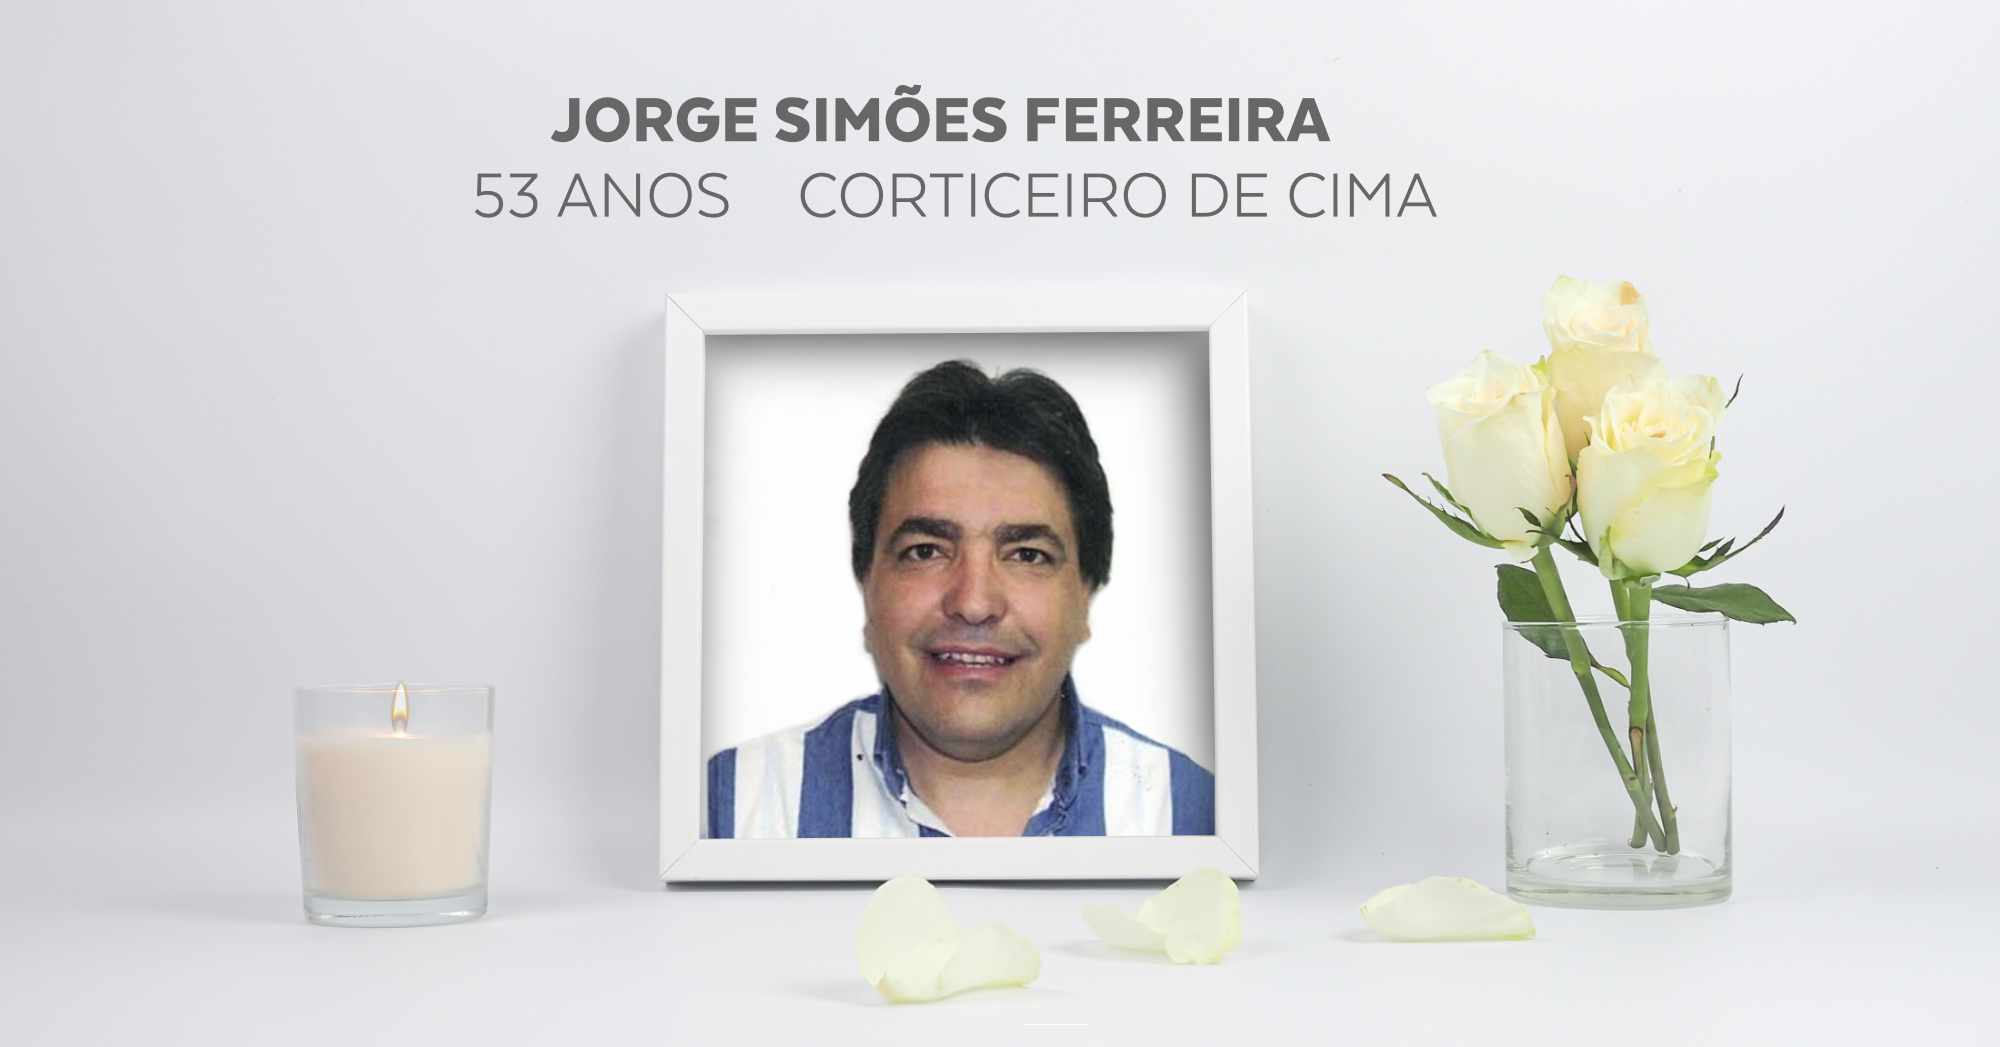 Jorge Simões Ferreira